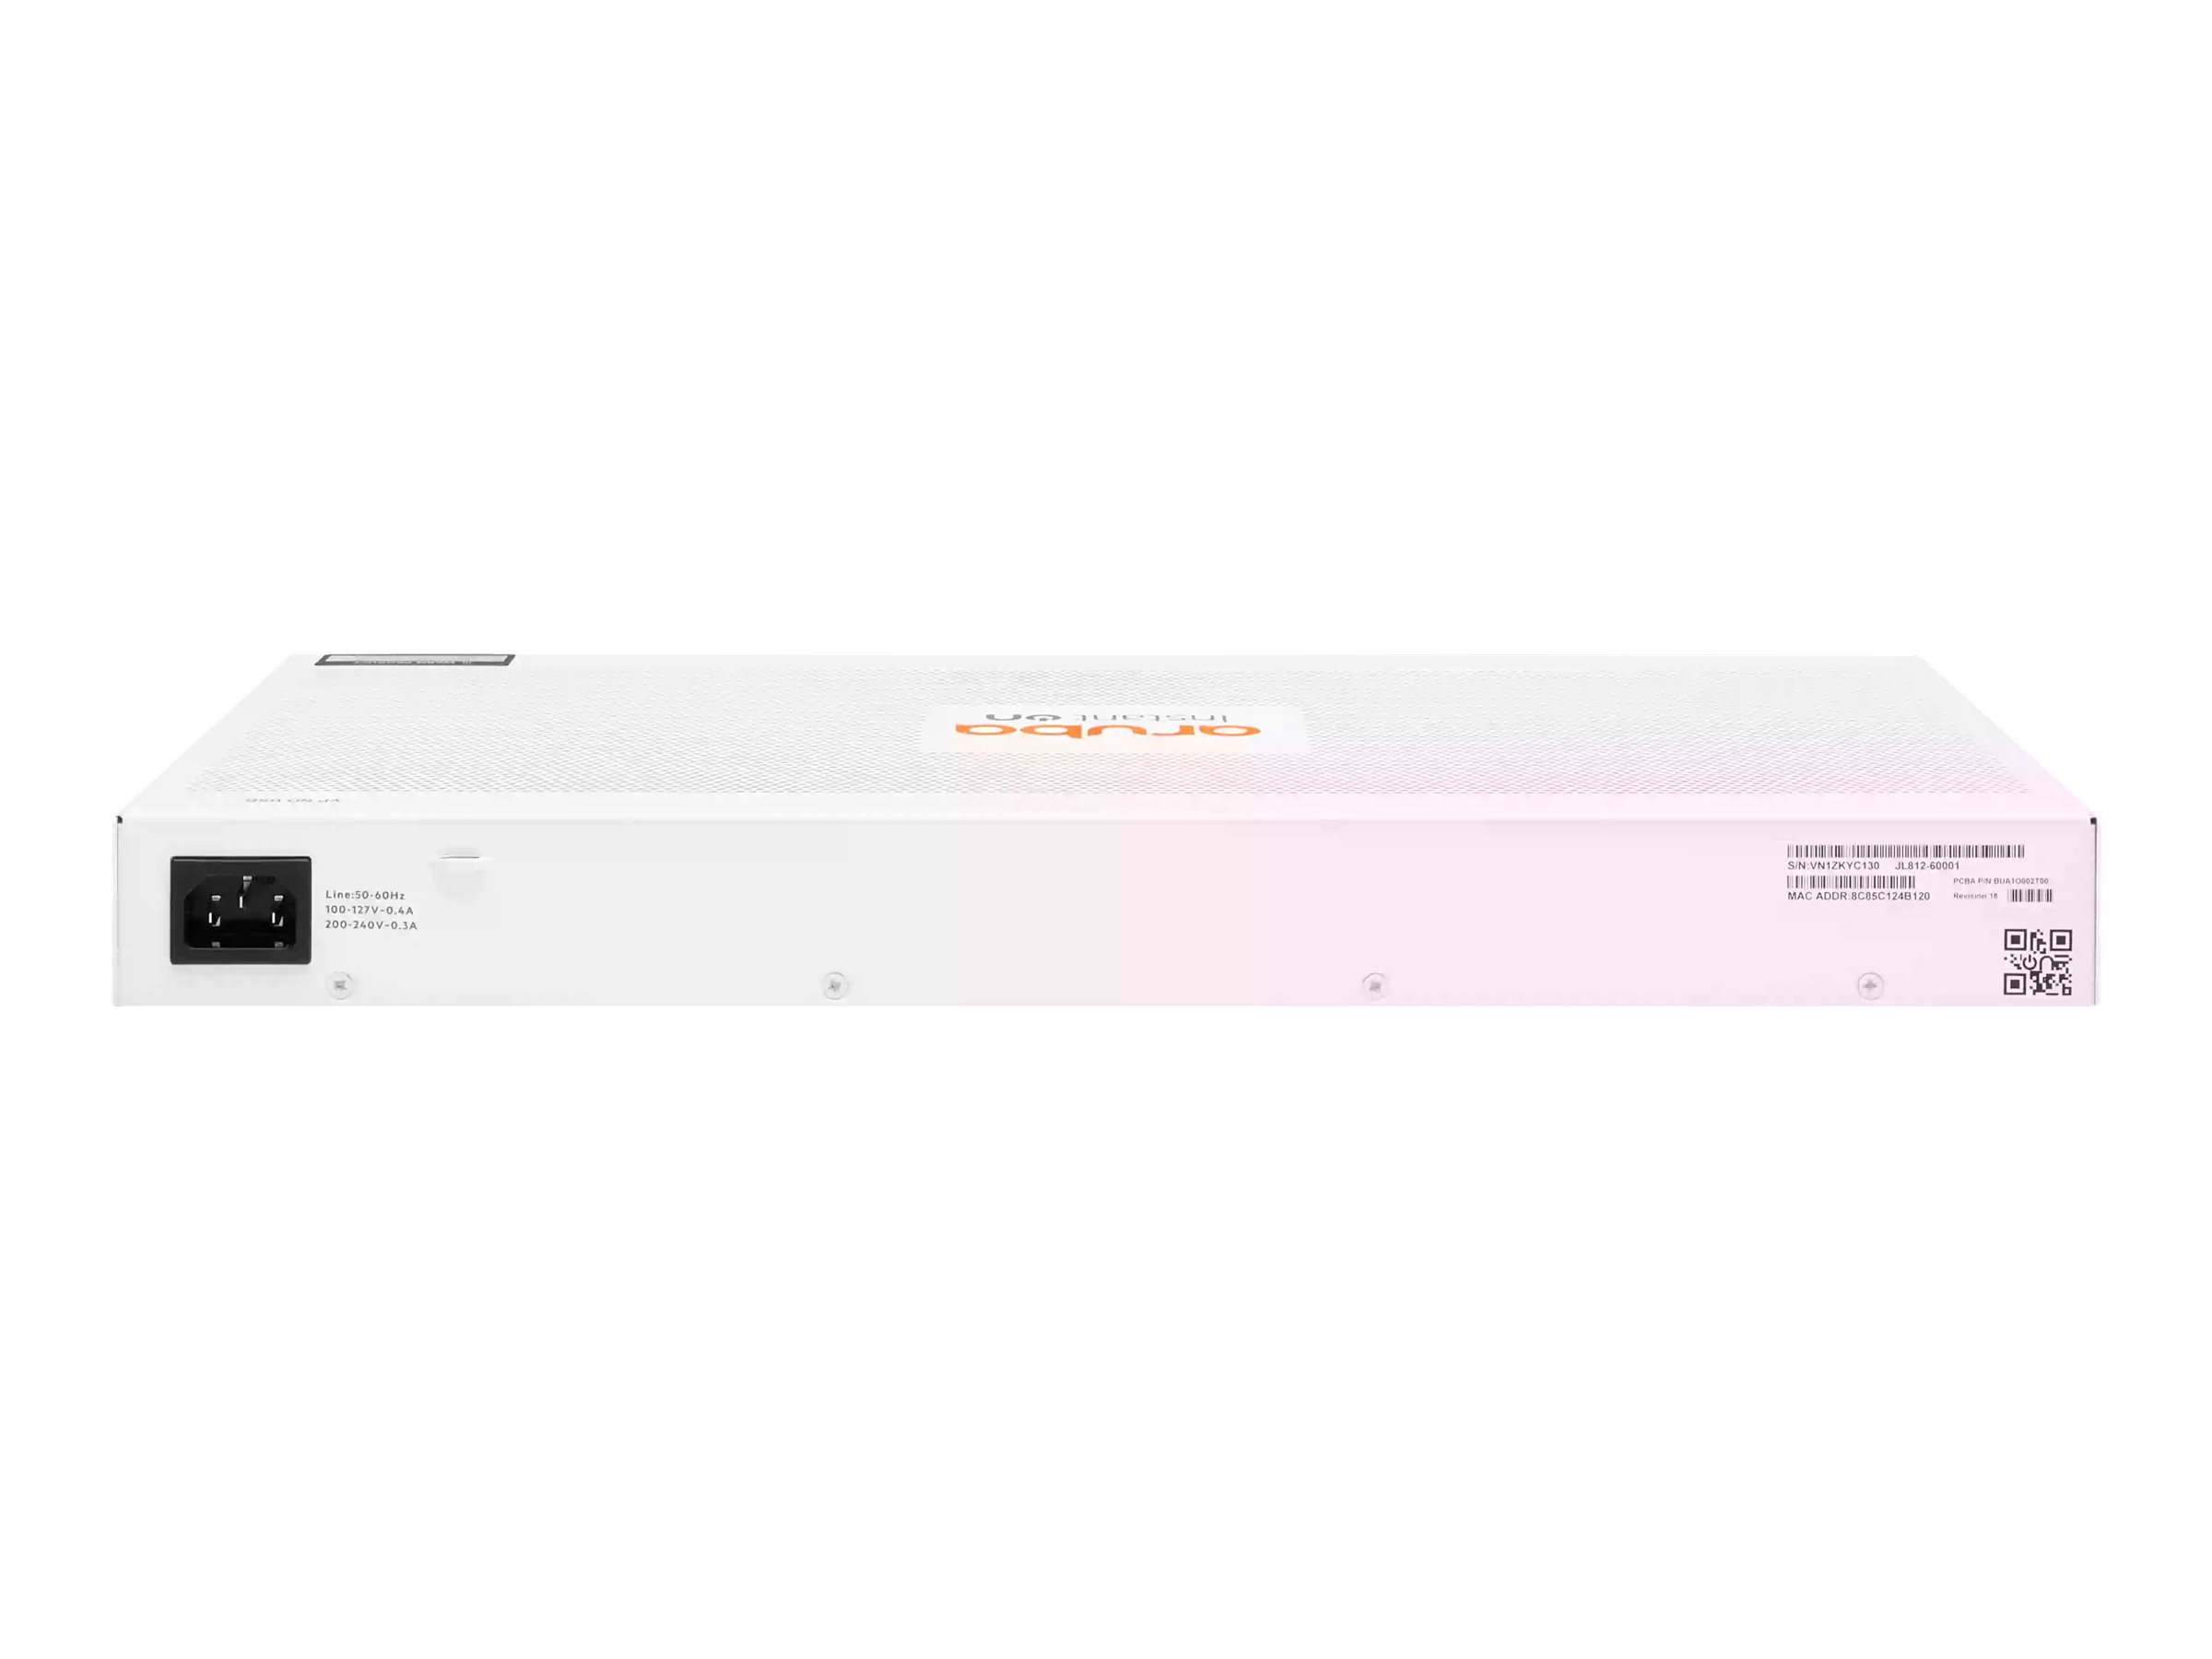 HPE Aruba Instant On 1830 24G 2SFP Switch - Commutateur - intelligent - 24 x 10/100/1000 + 2 x Gigabit SFP - de bureau, Montable sur rack - JL812A#ABB - Concentrateurs et commutateurs gigabit